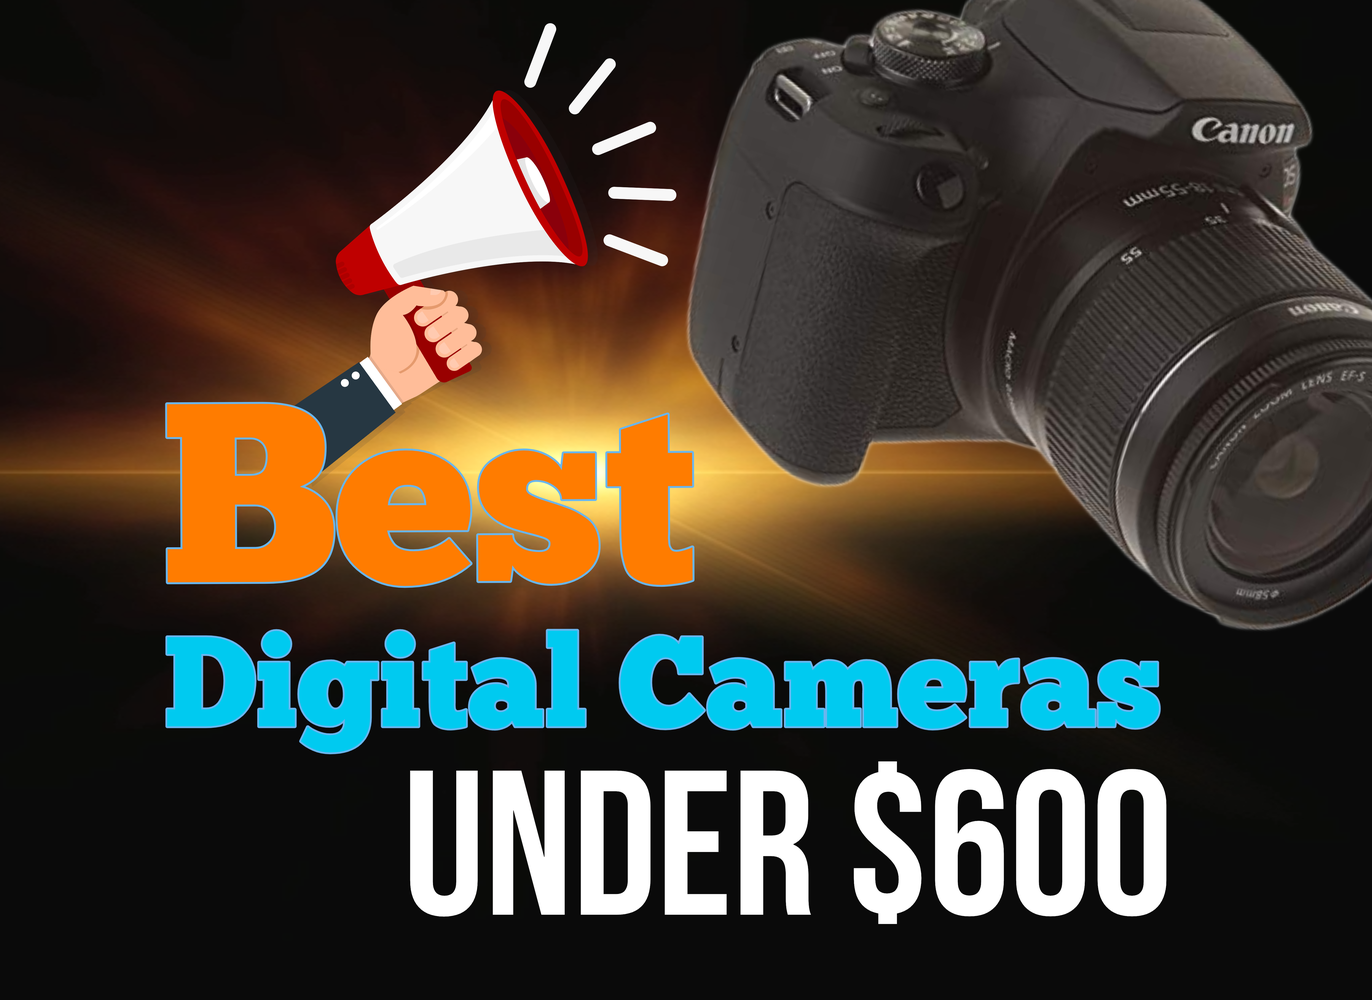 Best Digital Cameras Under 600 Dollars